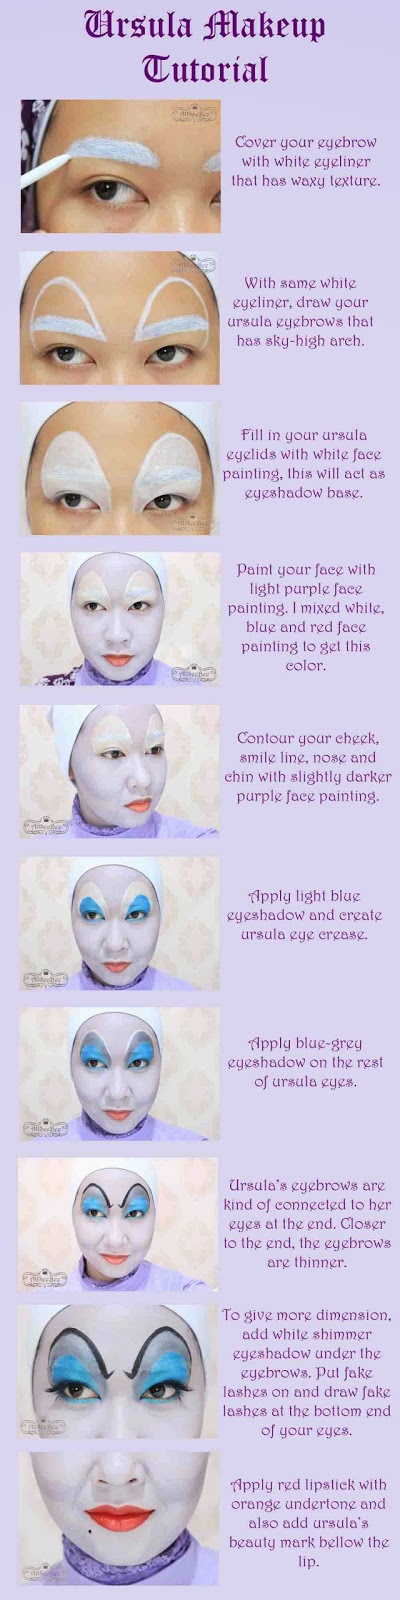 Disney Villains Diva Makeup Collaboration - Ursula (with tutorial)